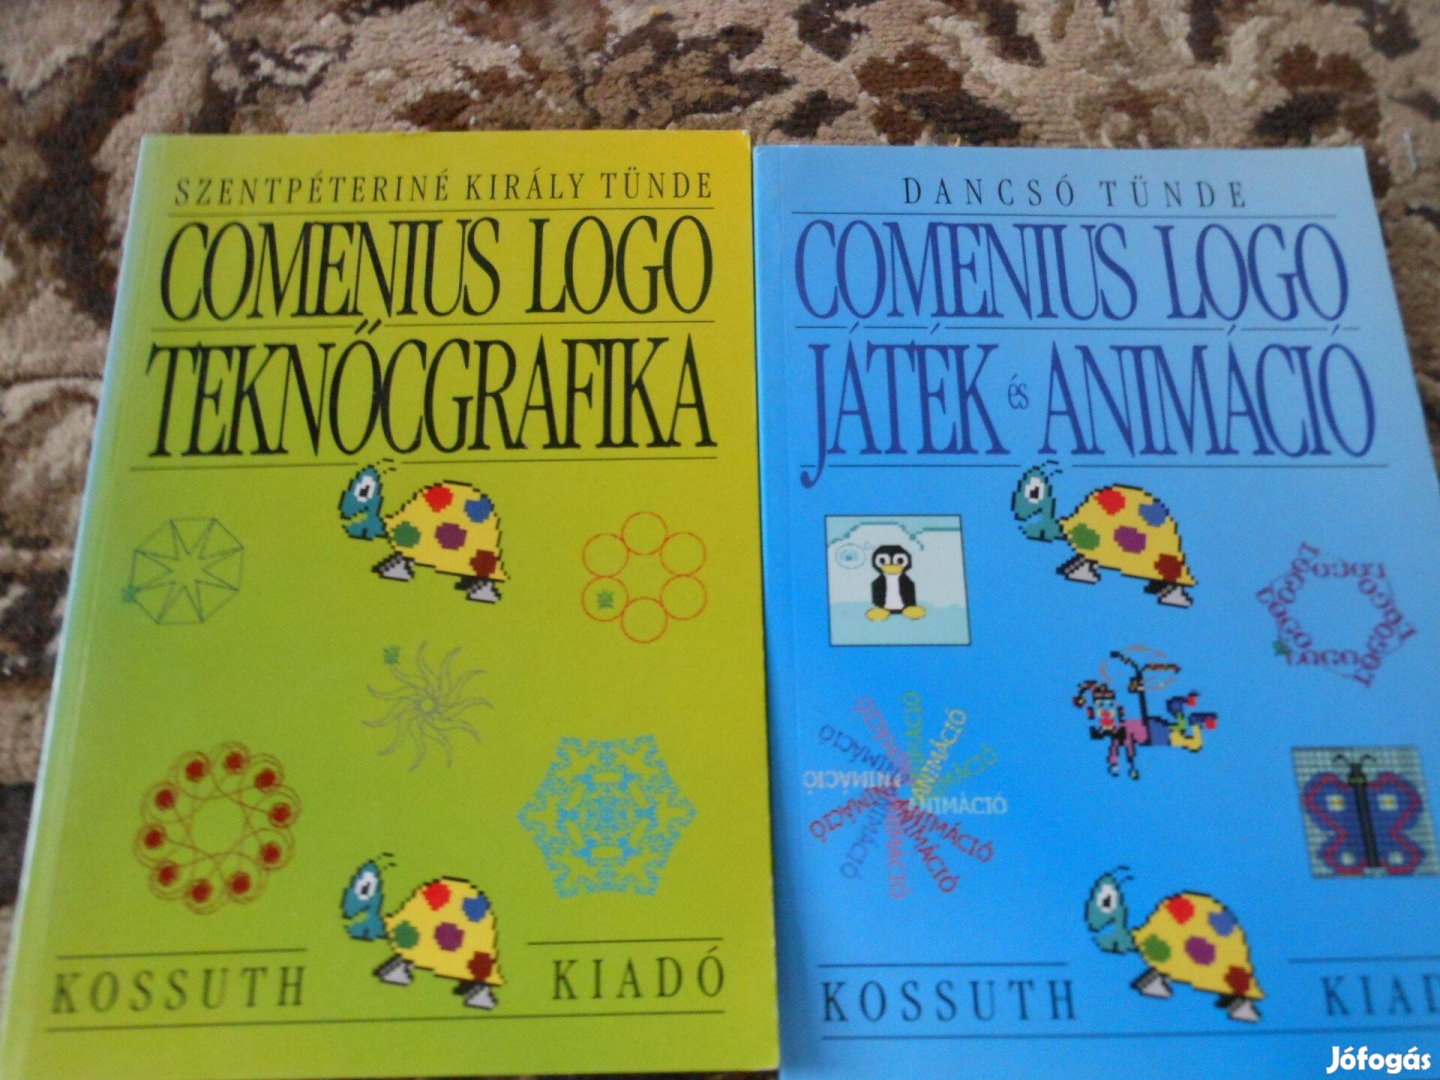 Comenius logo teknőcgrafika és Játék és animáció 2 kötet